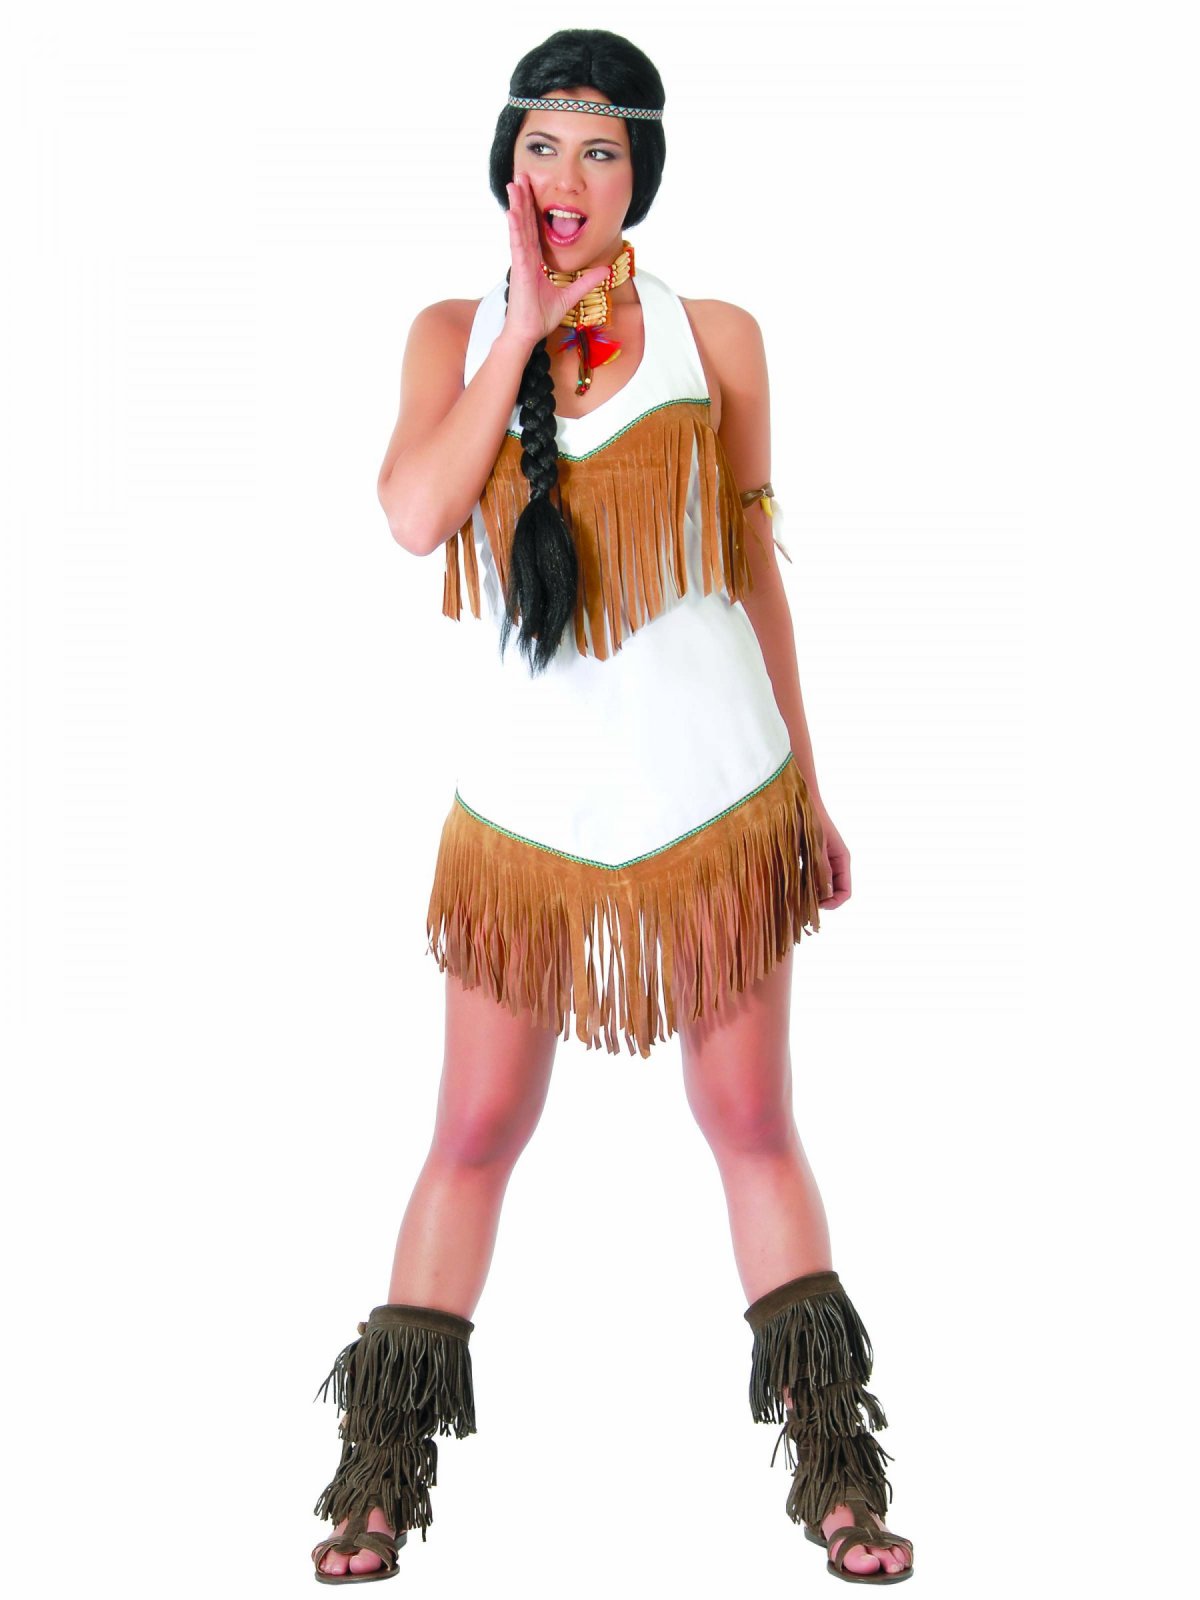 Vaccinere Gøre mit bedste erosion Indianer kostume Kvinde | Køb Pocahontas kostum kvinder her